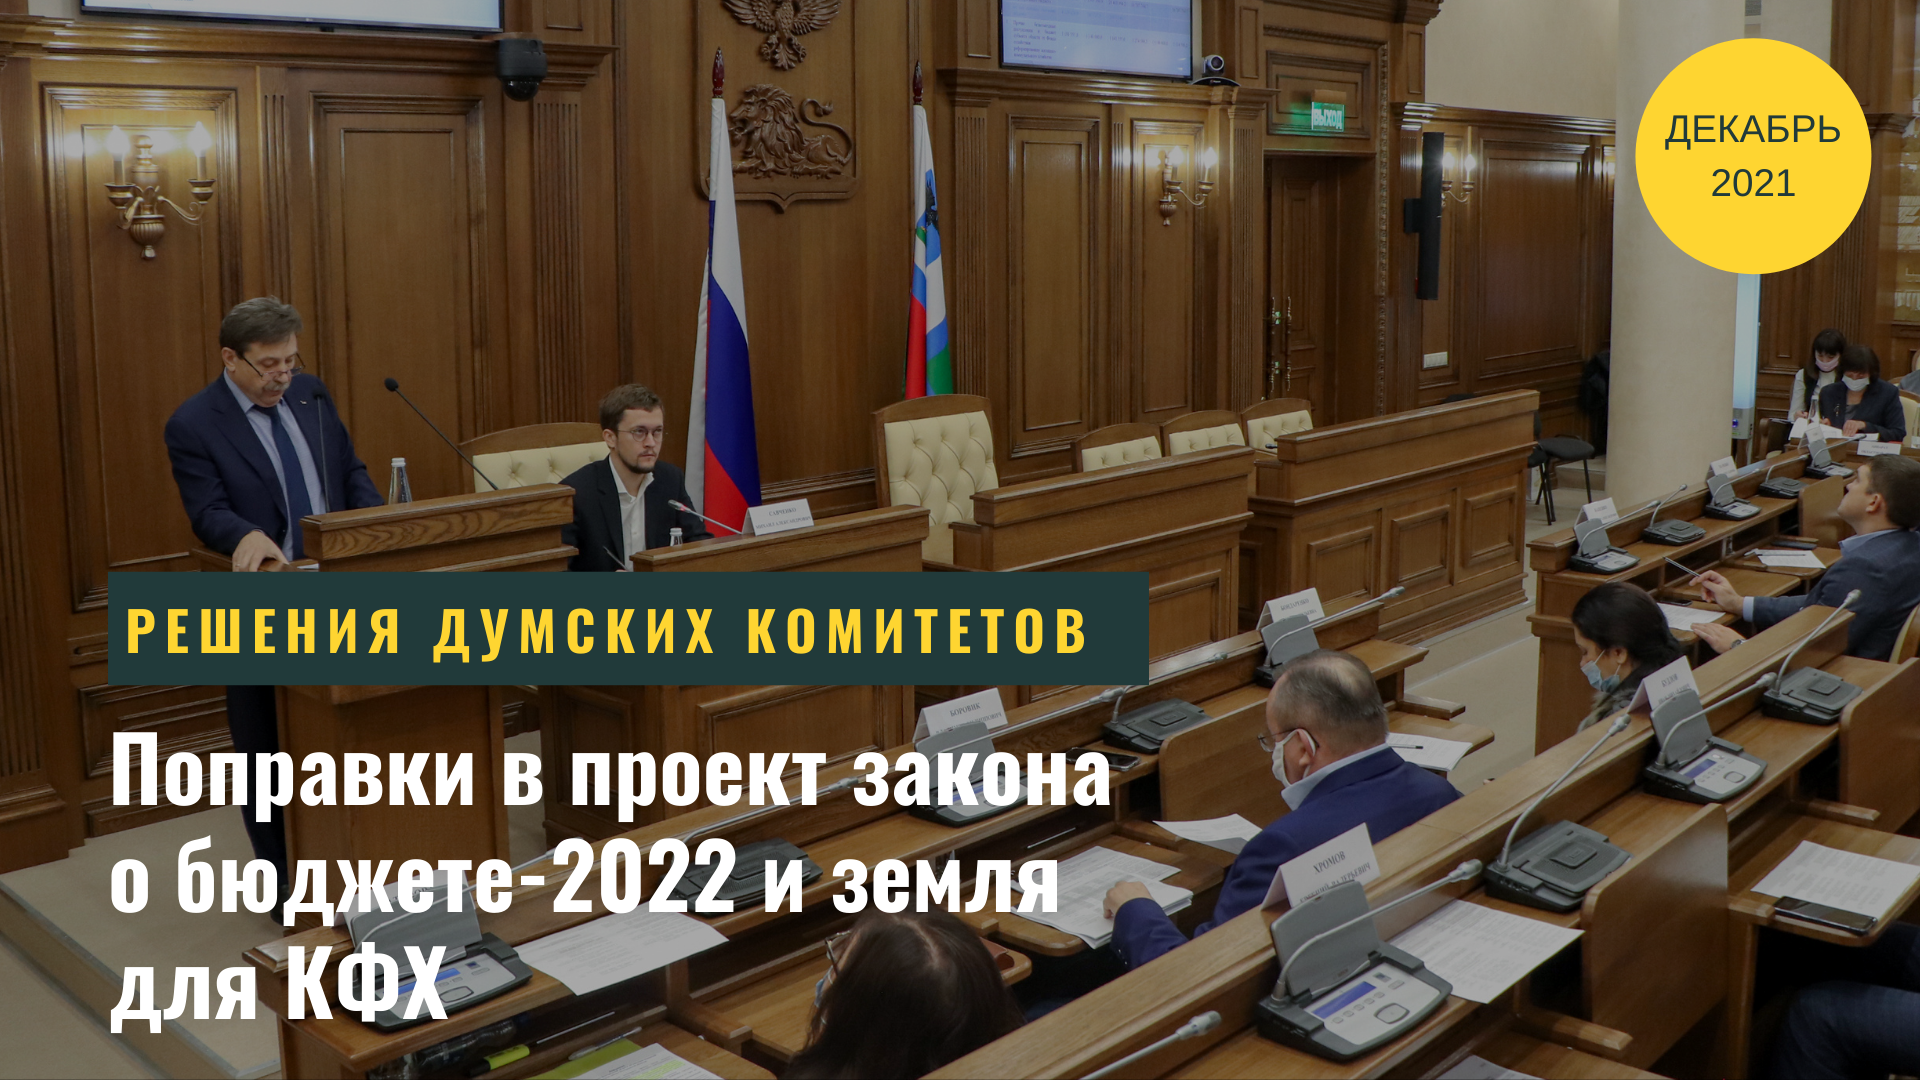 Поправки в проект закона о бюджете-2022 и земля для КФХ: заседание комитета облдумы 